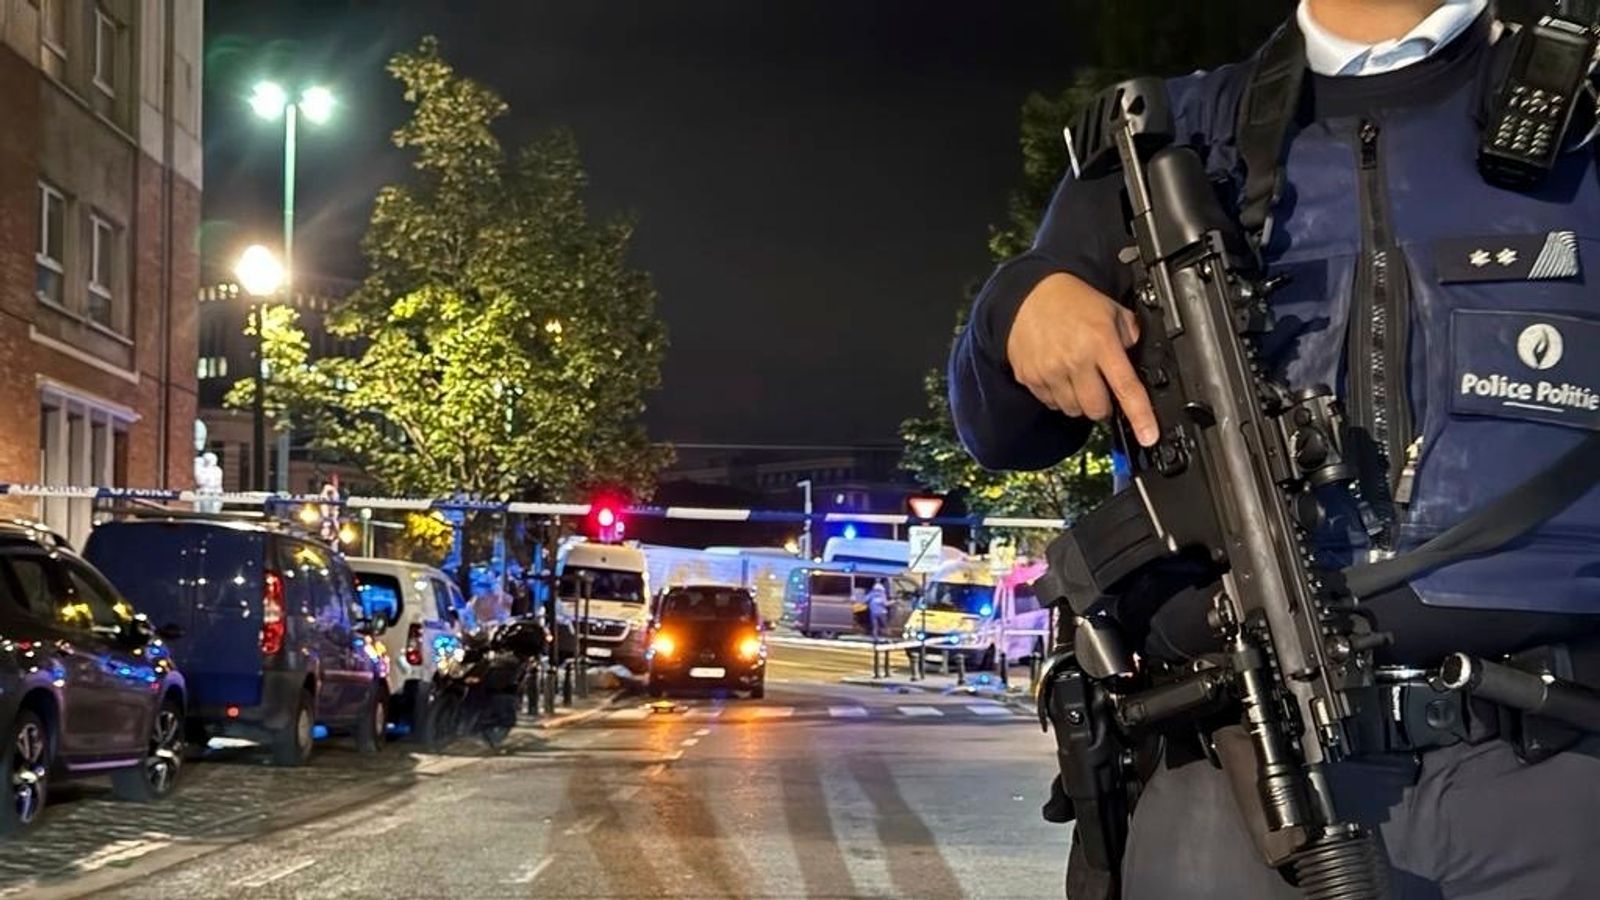 Brussel ‘op hoogste terreuralarm’ en voetbalfans gevraagd om in stadions te blijven nadat twee mensen zijn doodgeschoten |  Wereldnieuws